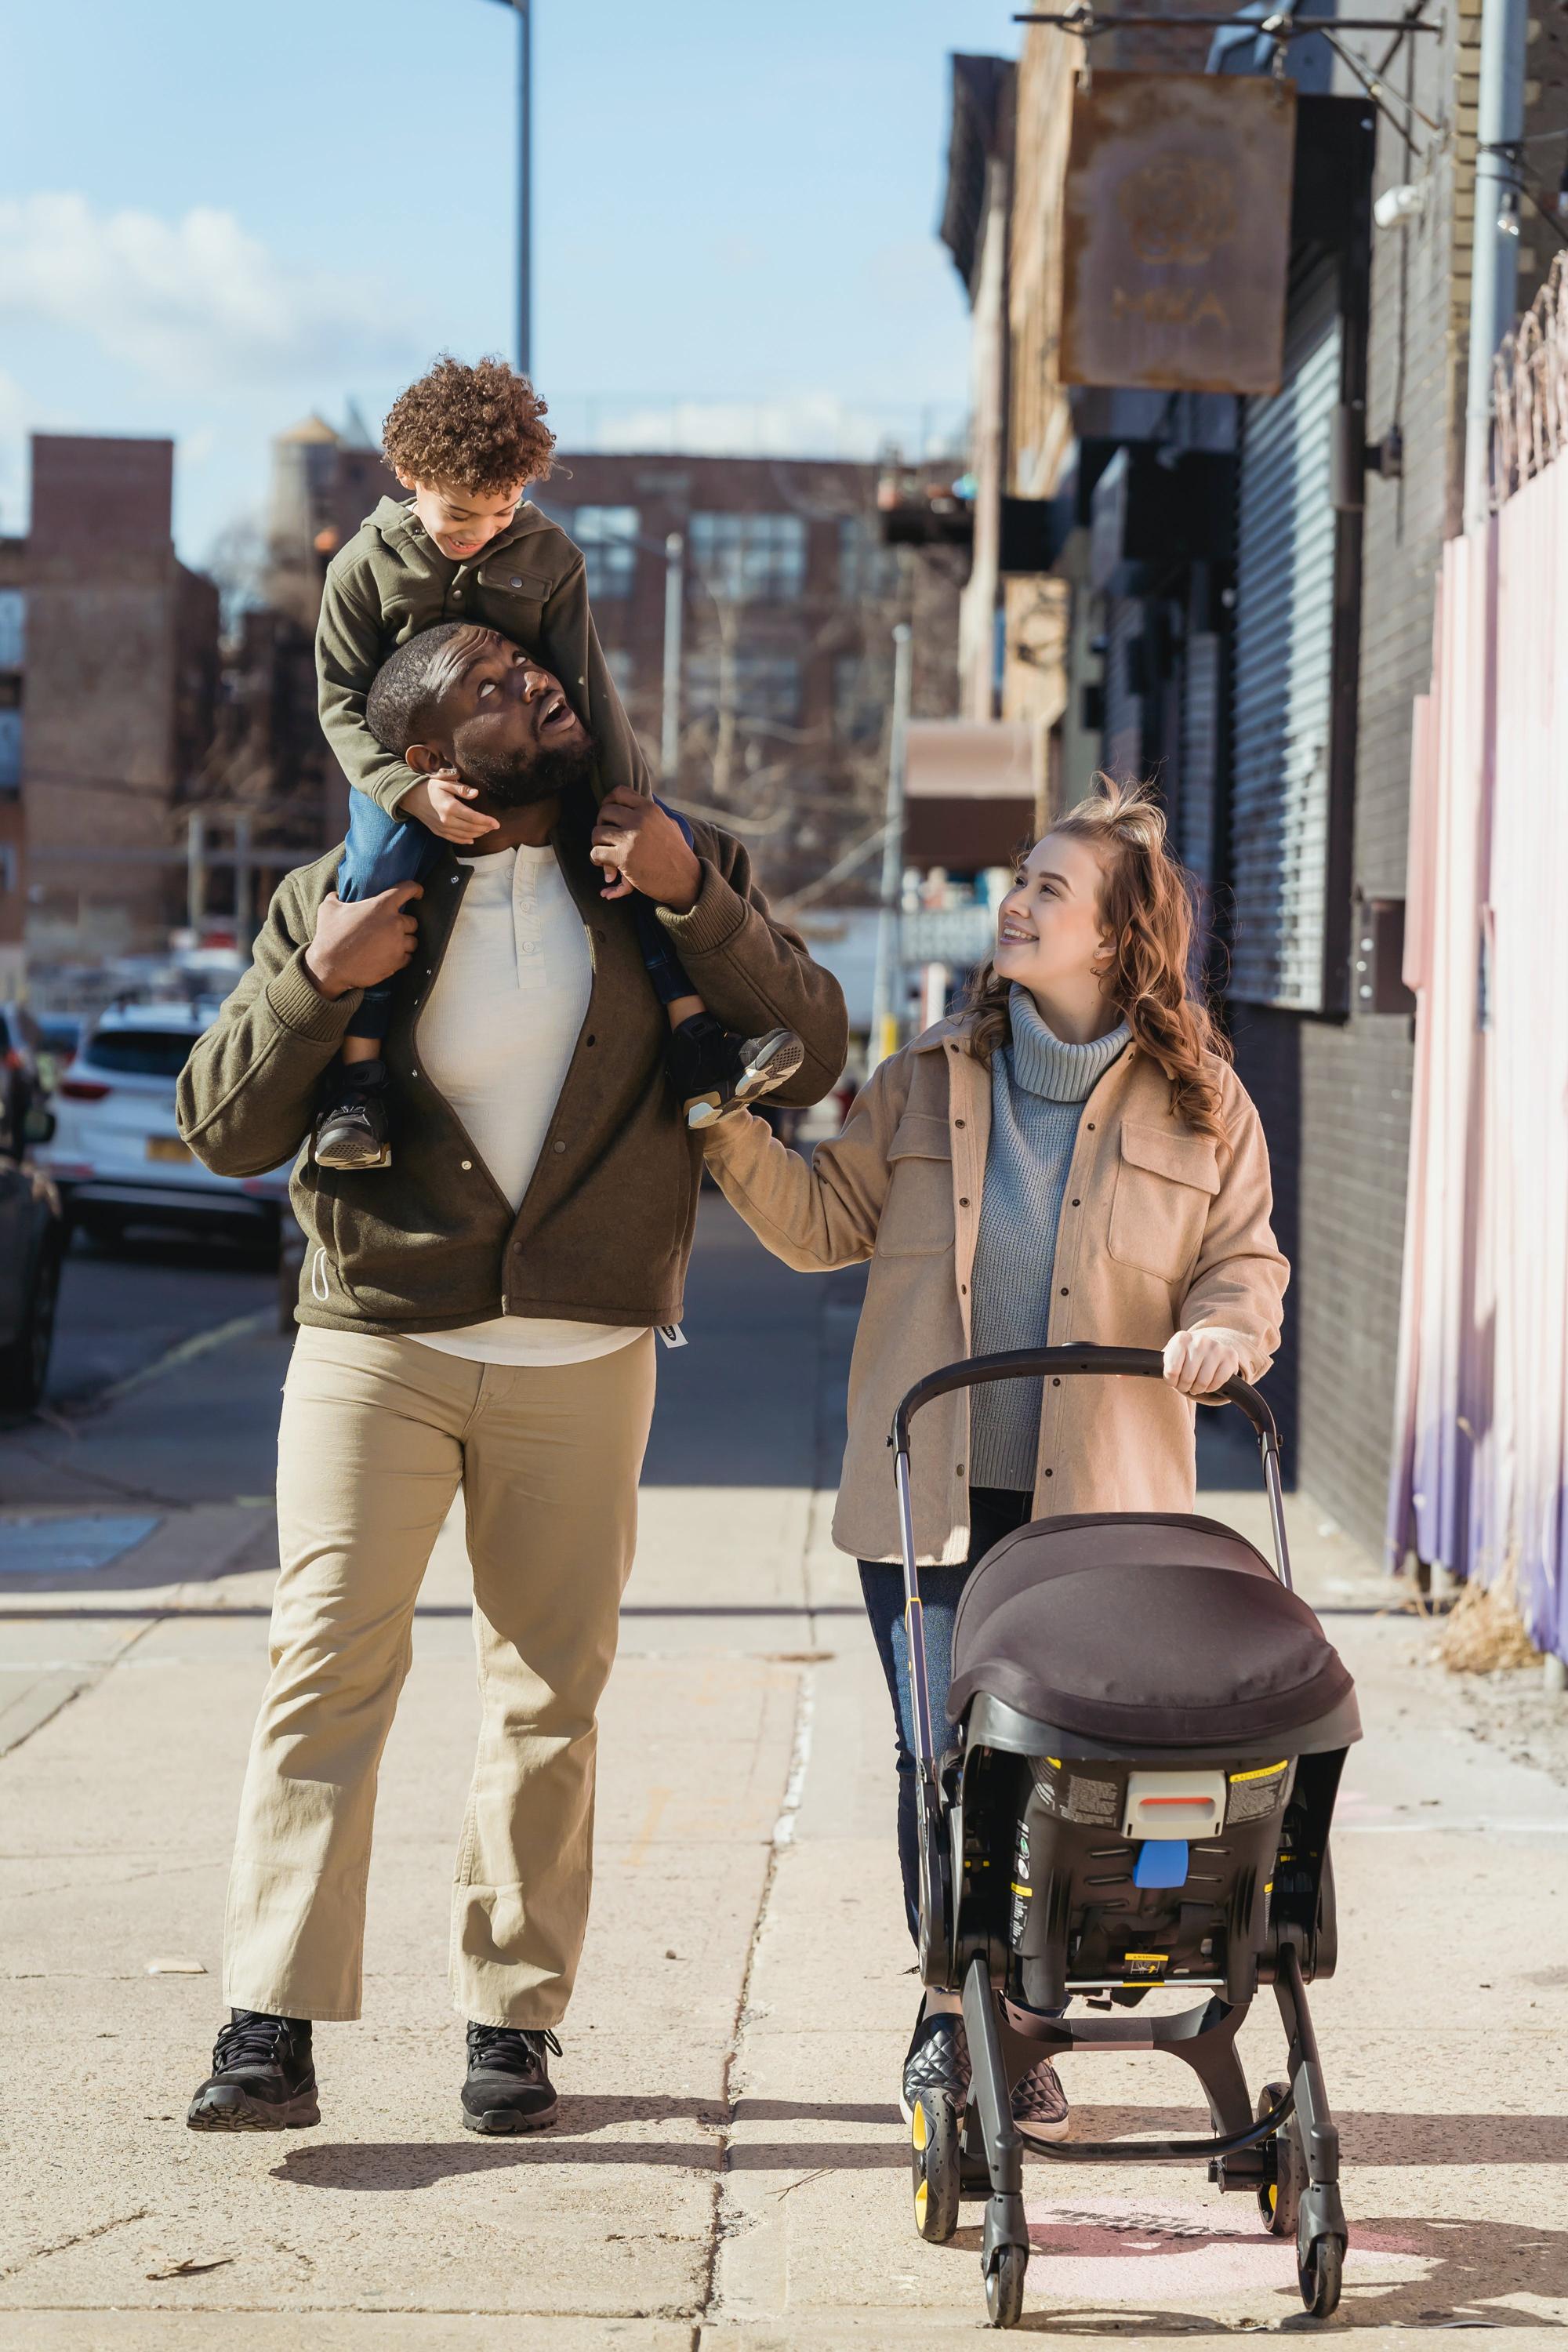 Recenzje wózków dla niemowląt – opinie rodziców i ekspertów